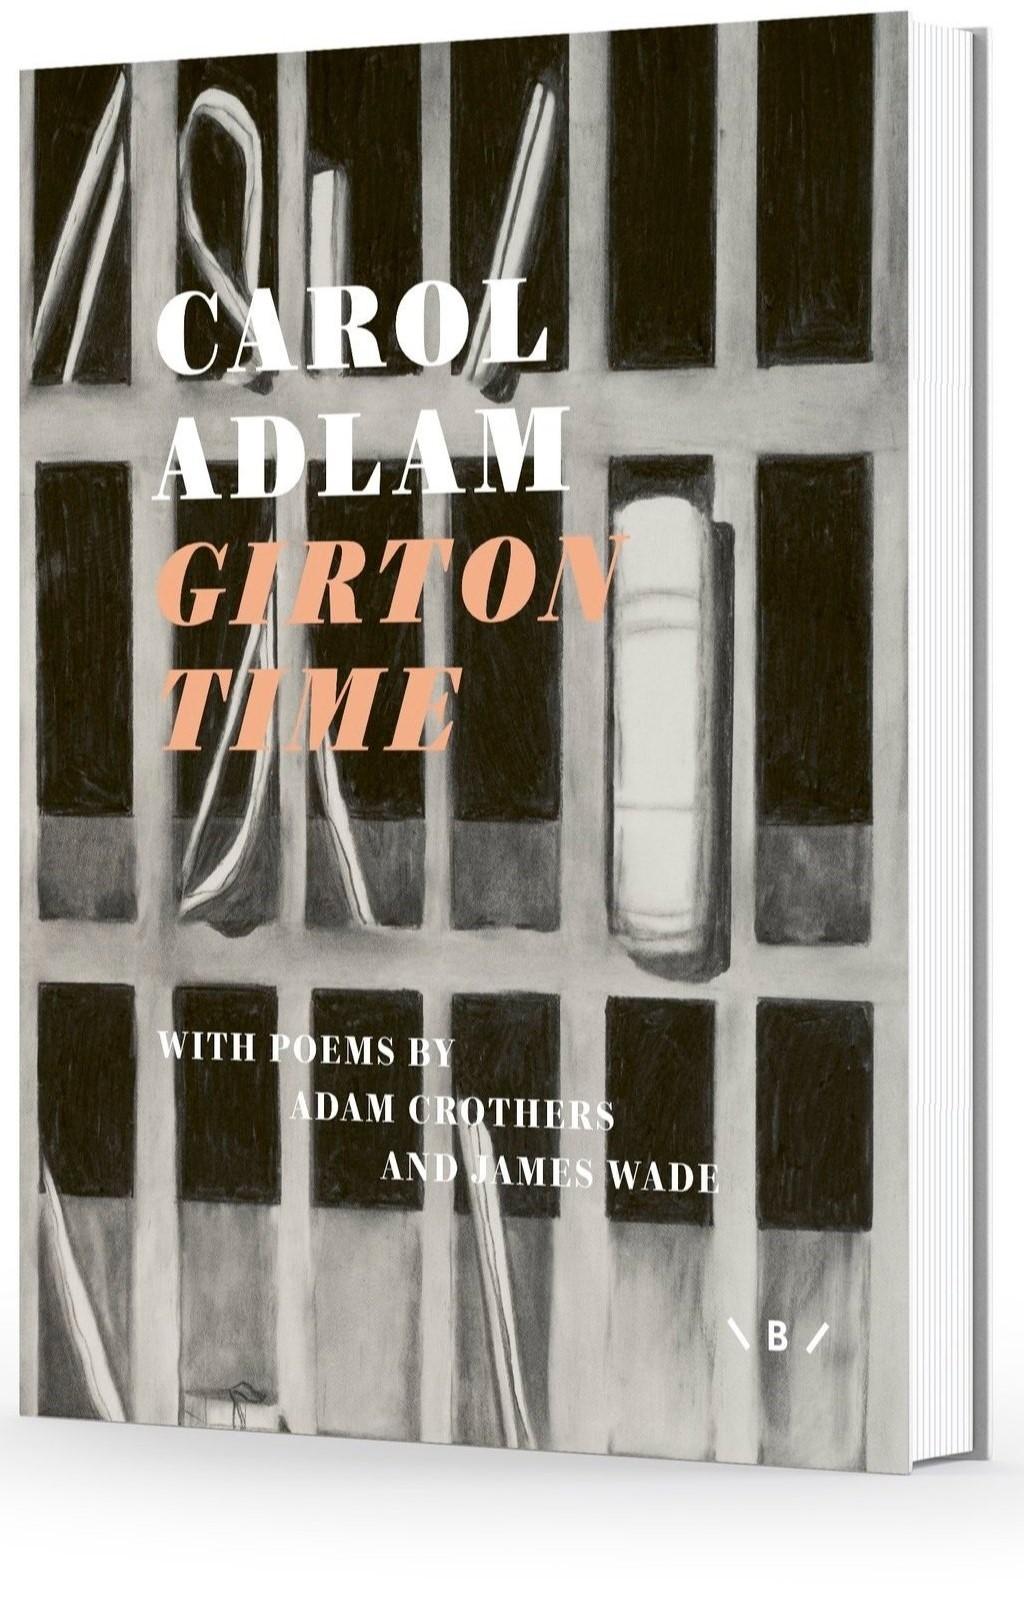 Carol Adlam's Girton Time book cover